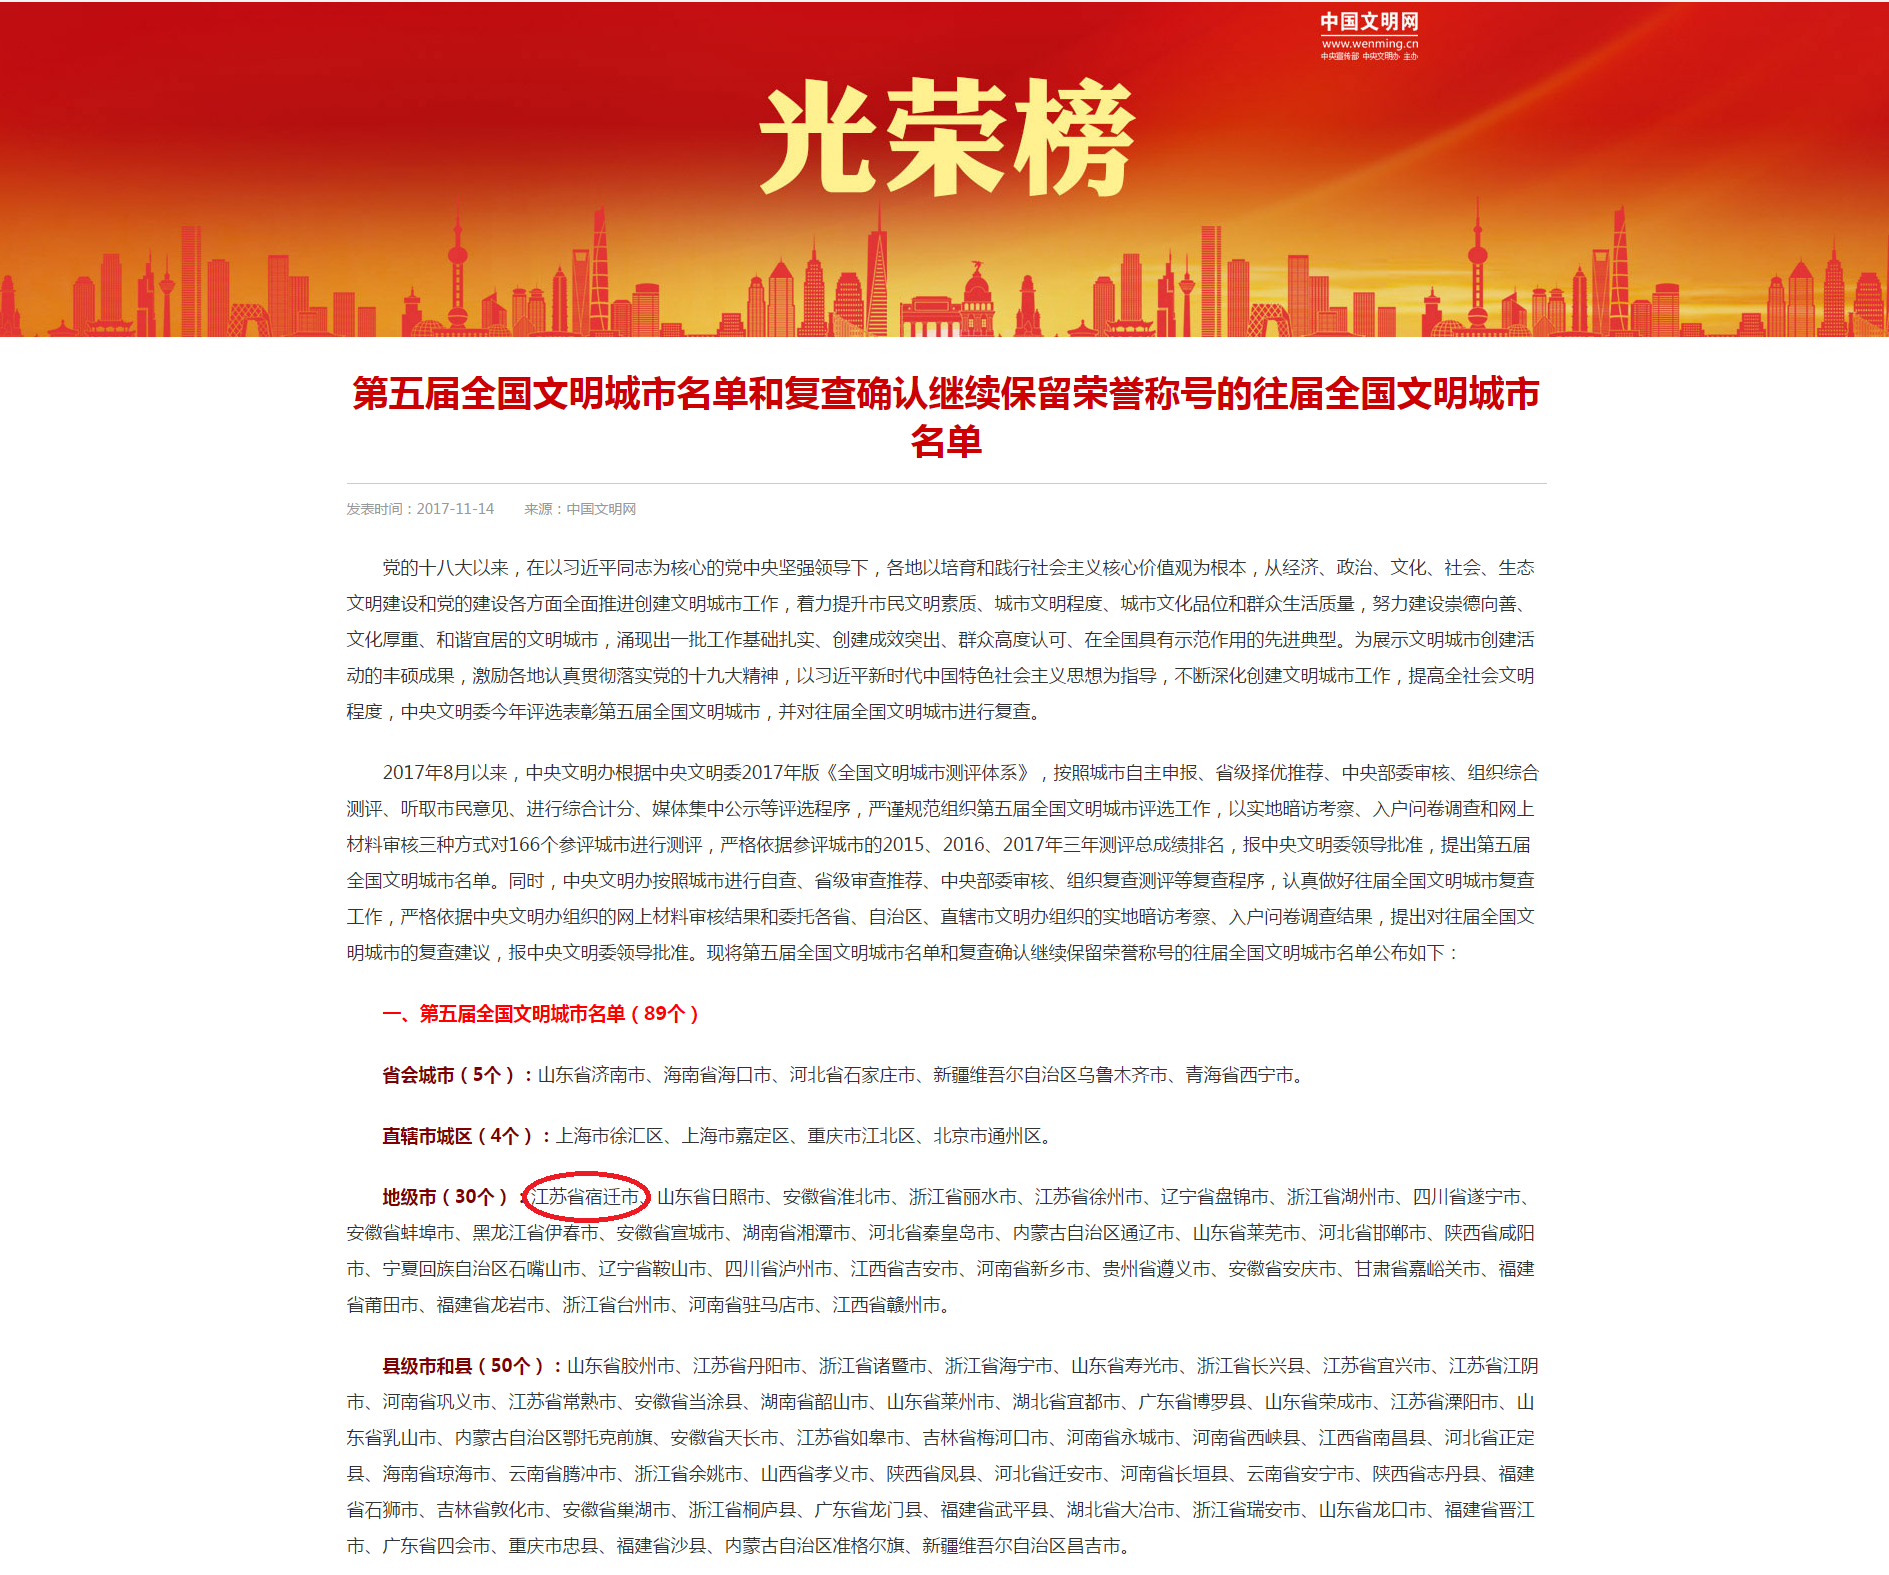 第五届全国文明城市名单和复查确认继续保留荣誉称号的往届全国文明城市名单---中国文明网.png